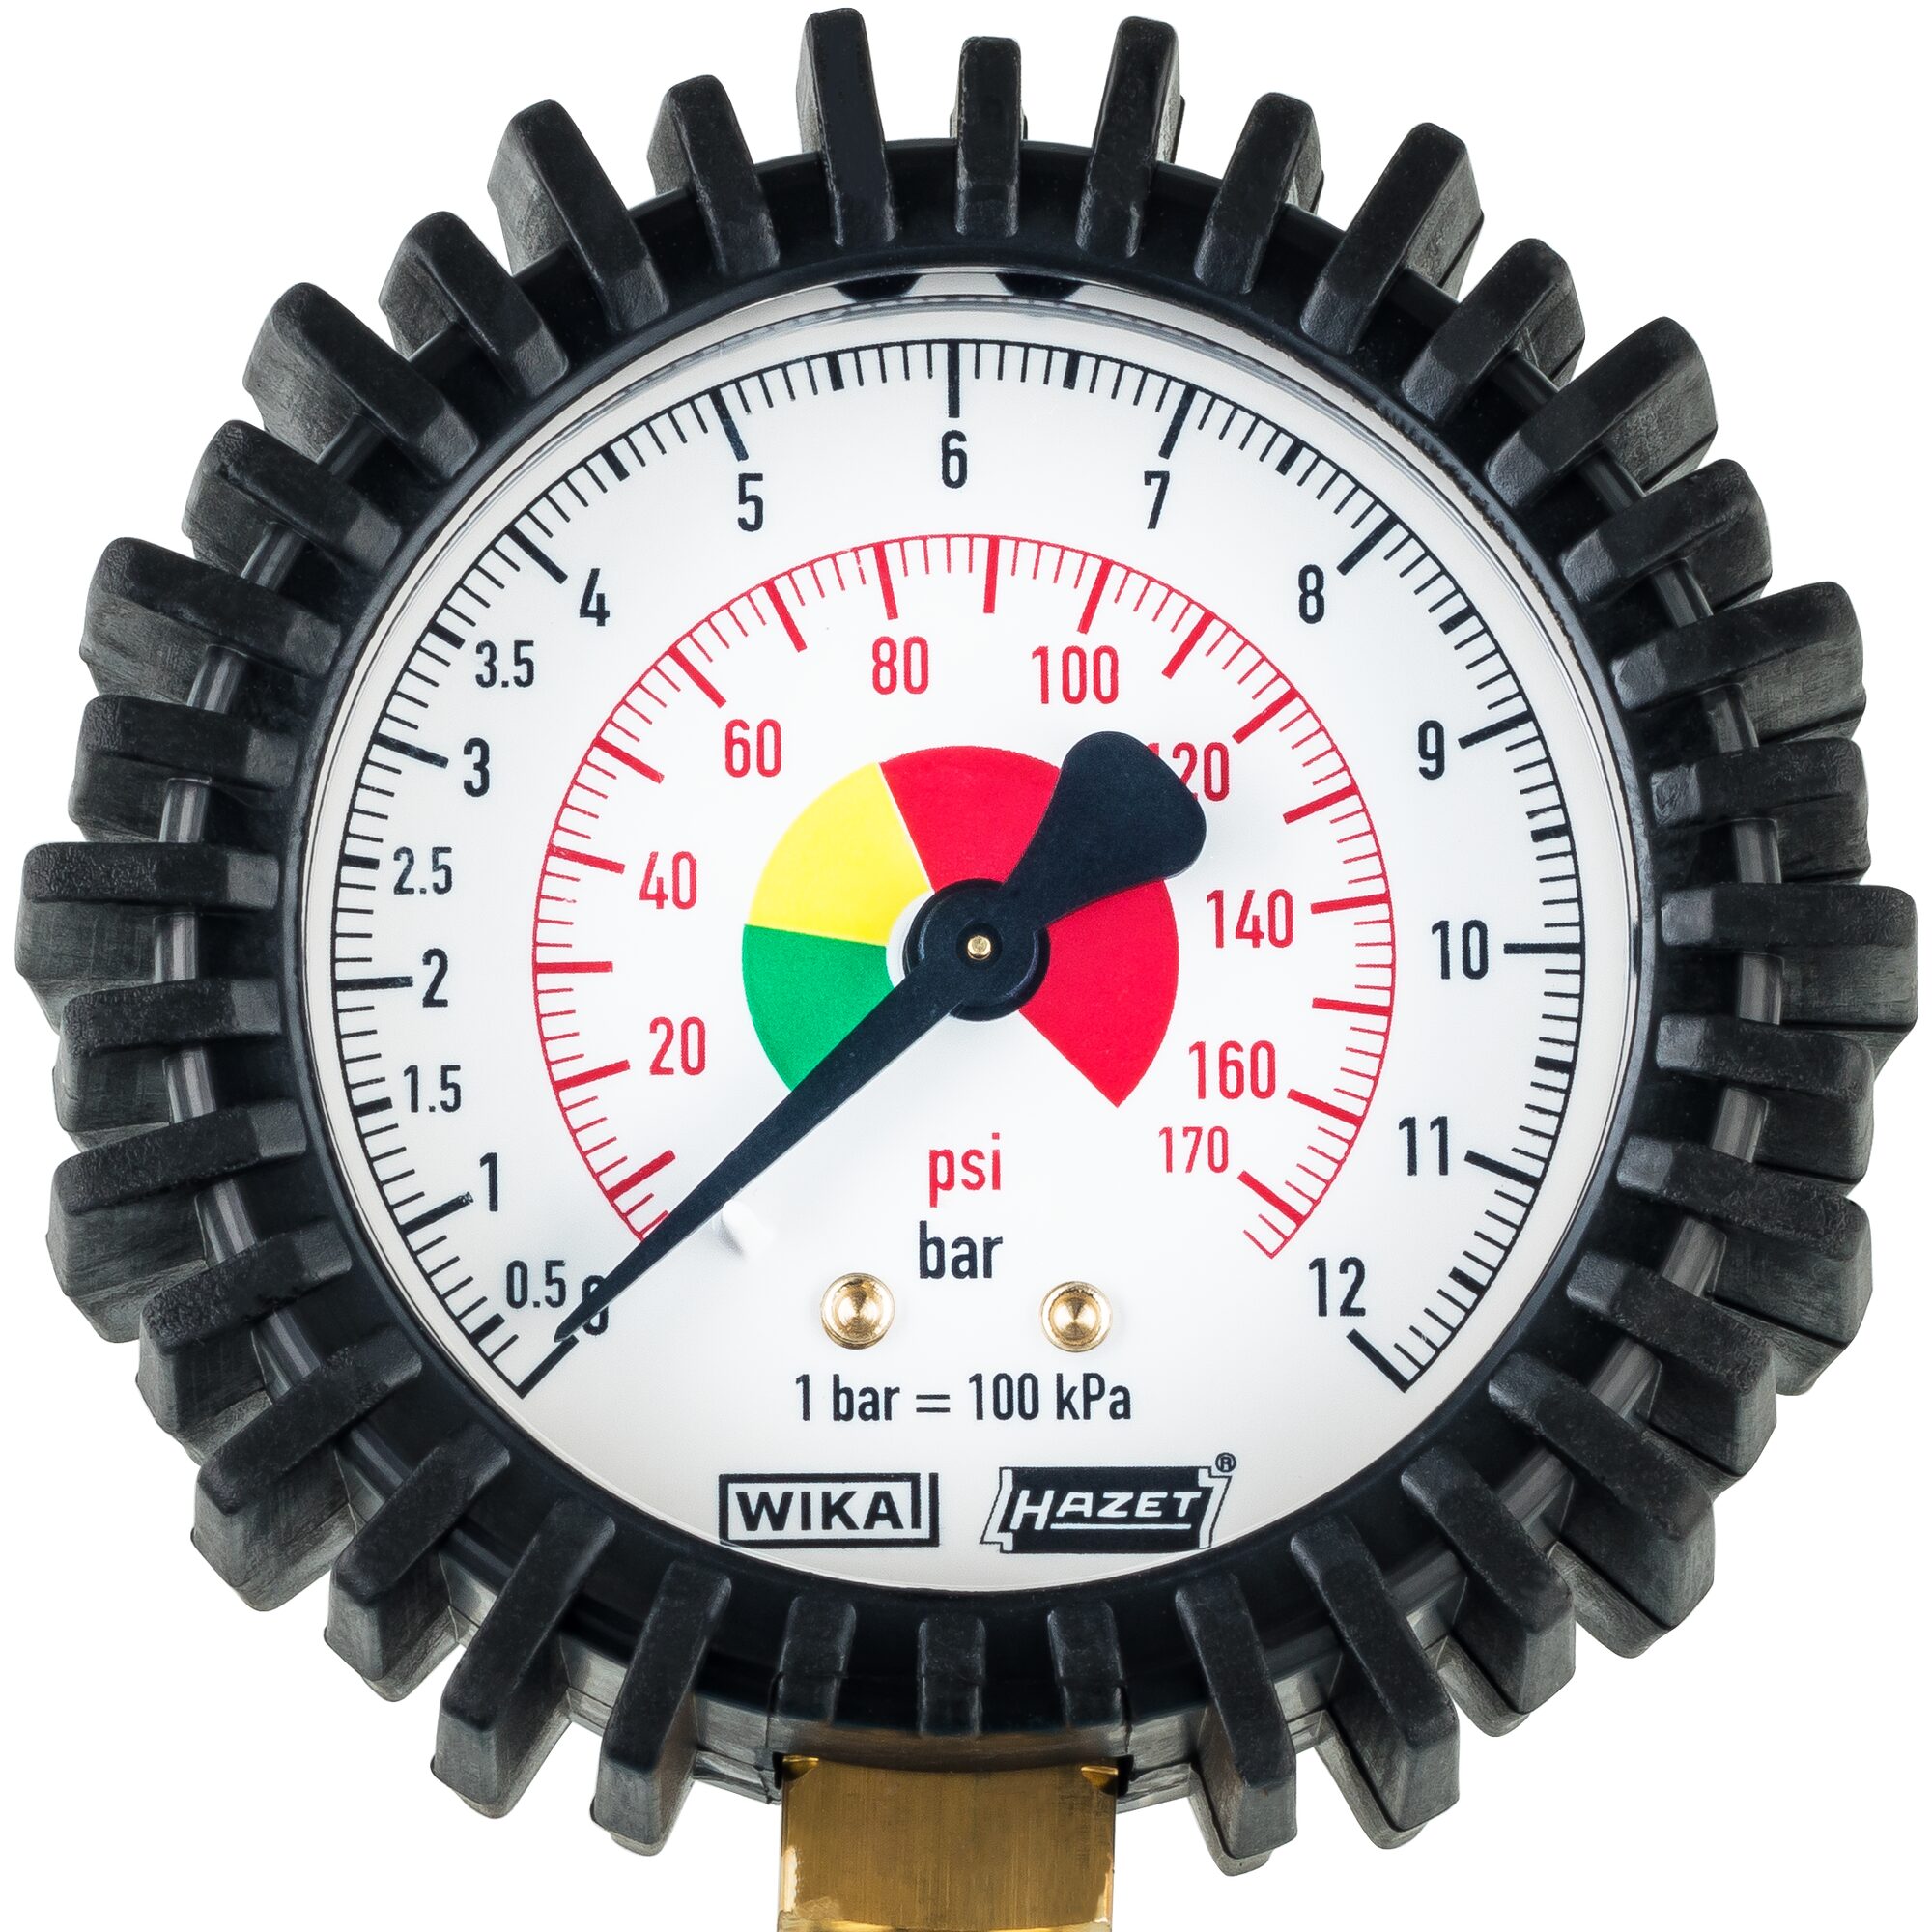 HAZET 9041-1 Reifenfüller Luftdruckprüfer Reifendruck Manometer PKW Motorrad bis 12 Bar